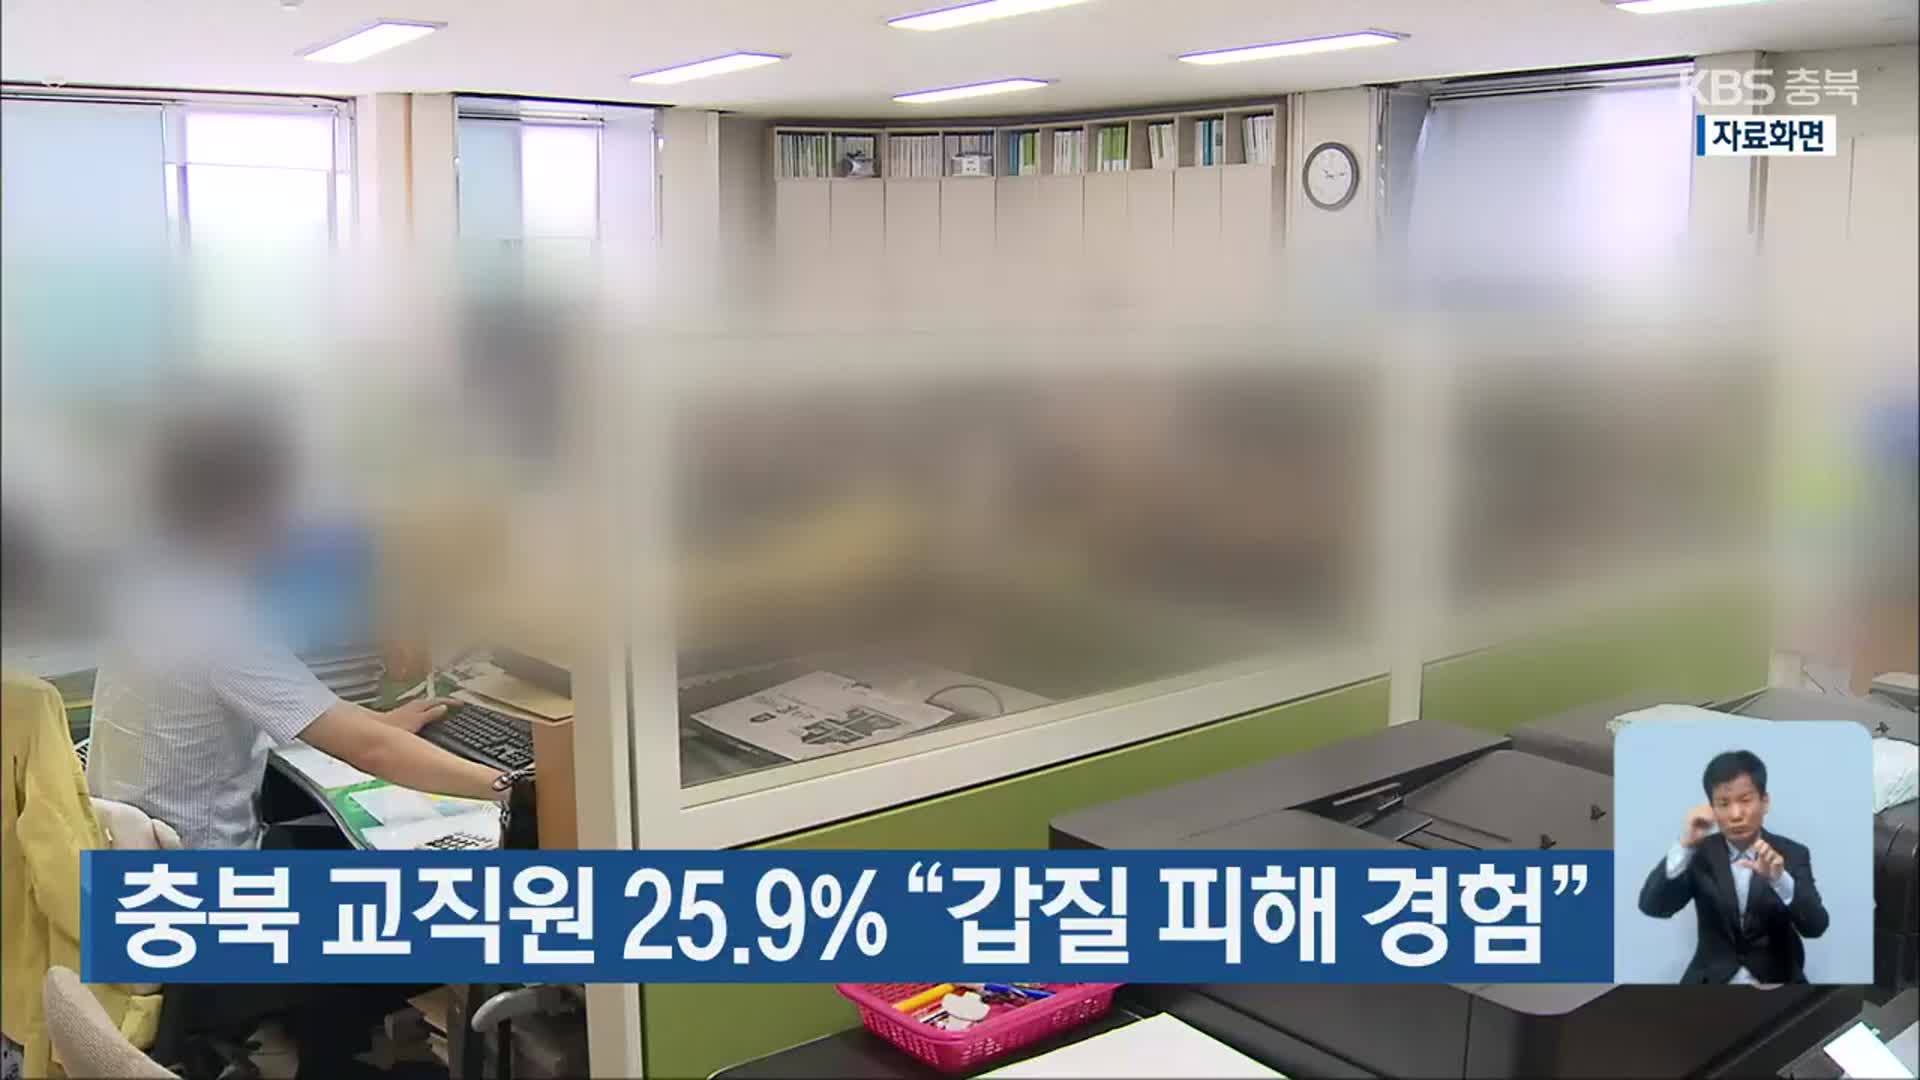 충북 교직원 25.9% “갑질 피해 경험”